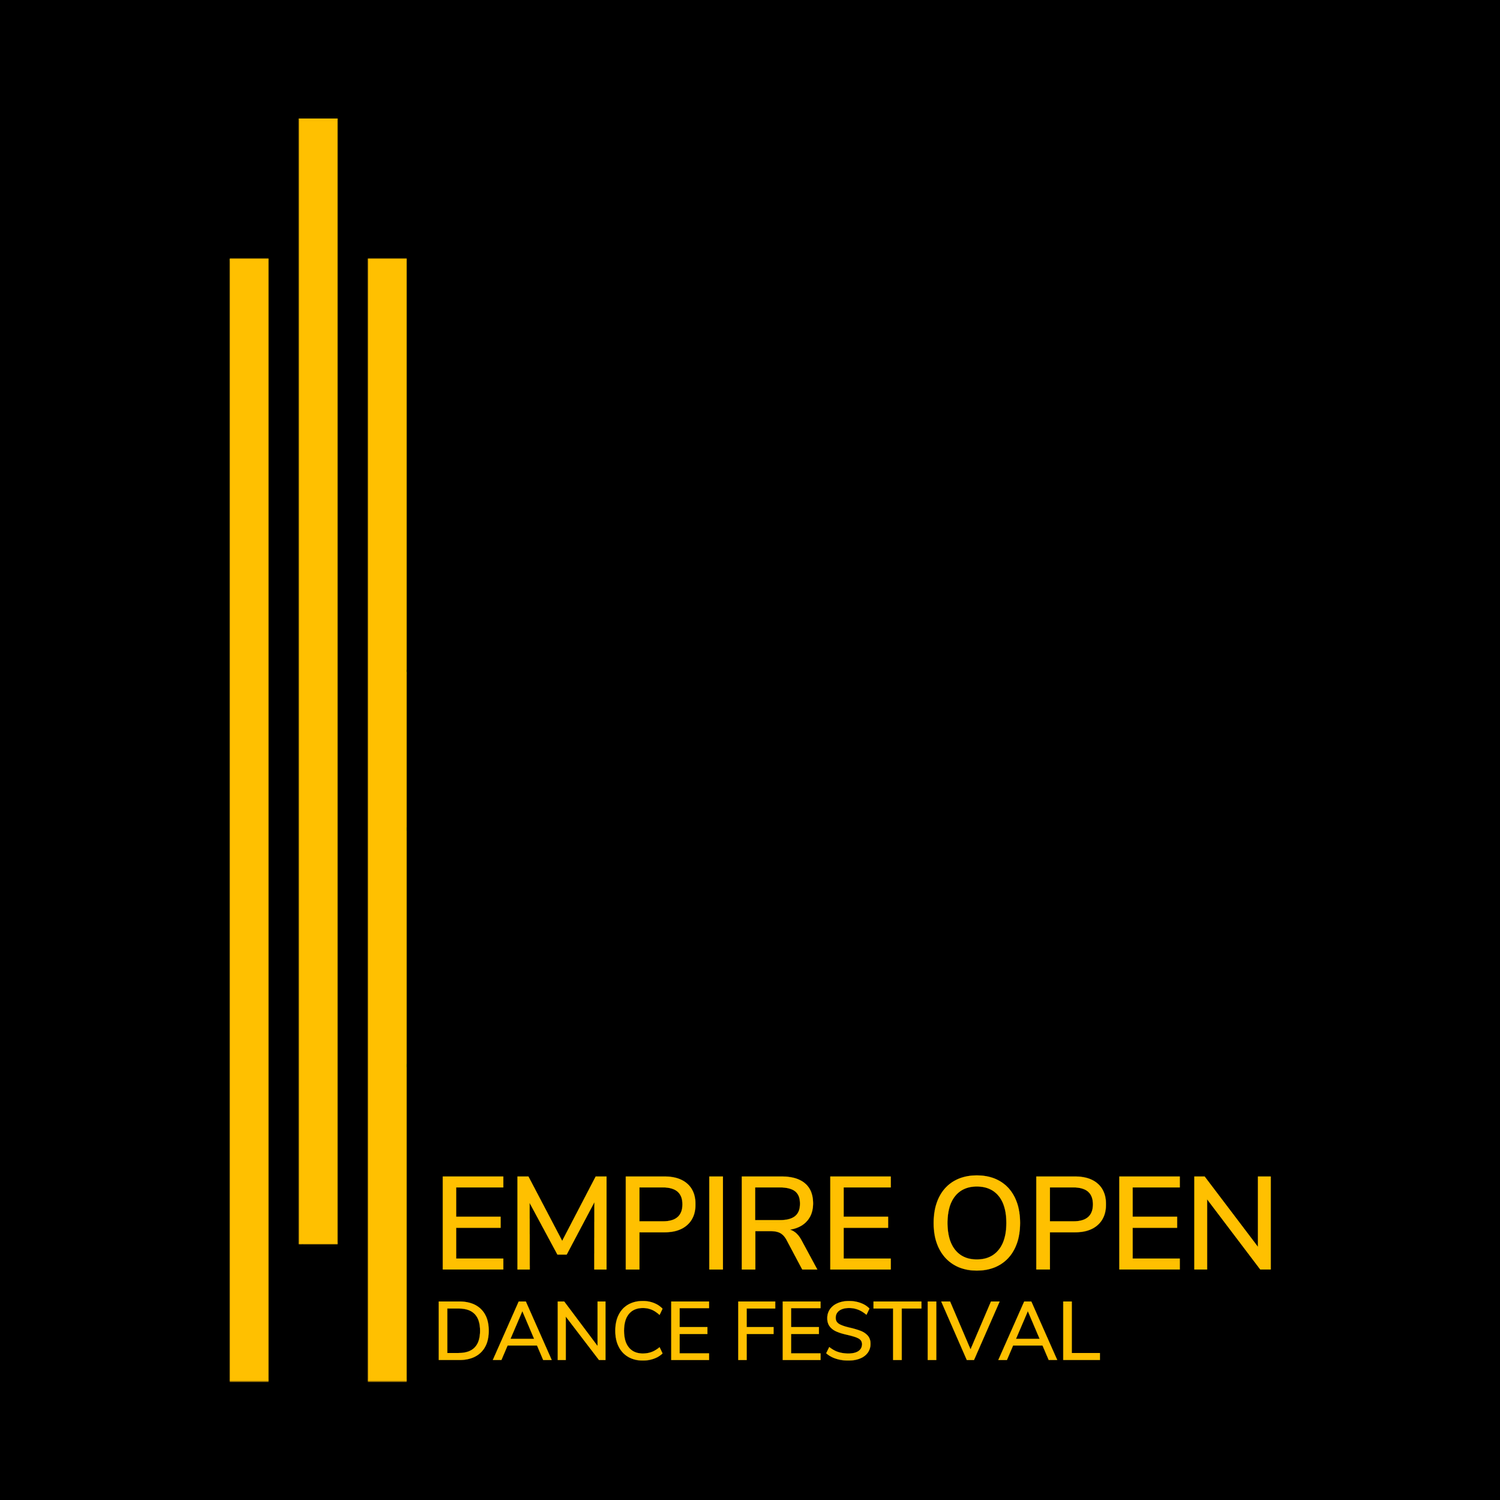 Empire Open Dance Festival